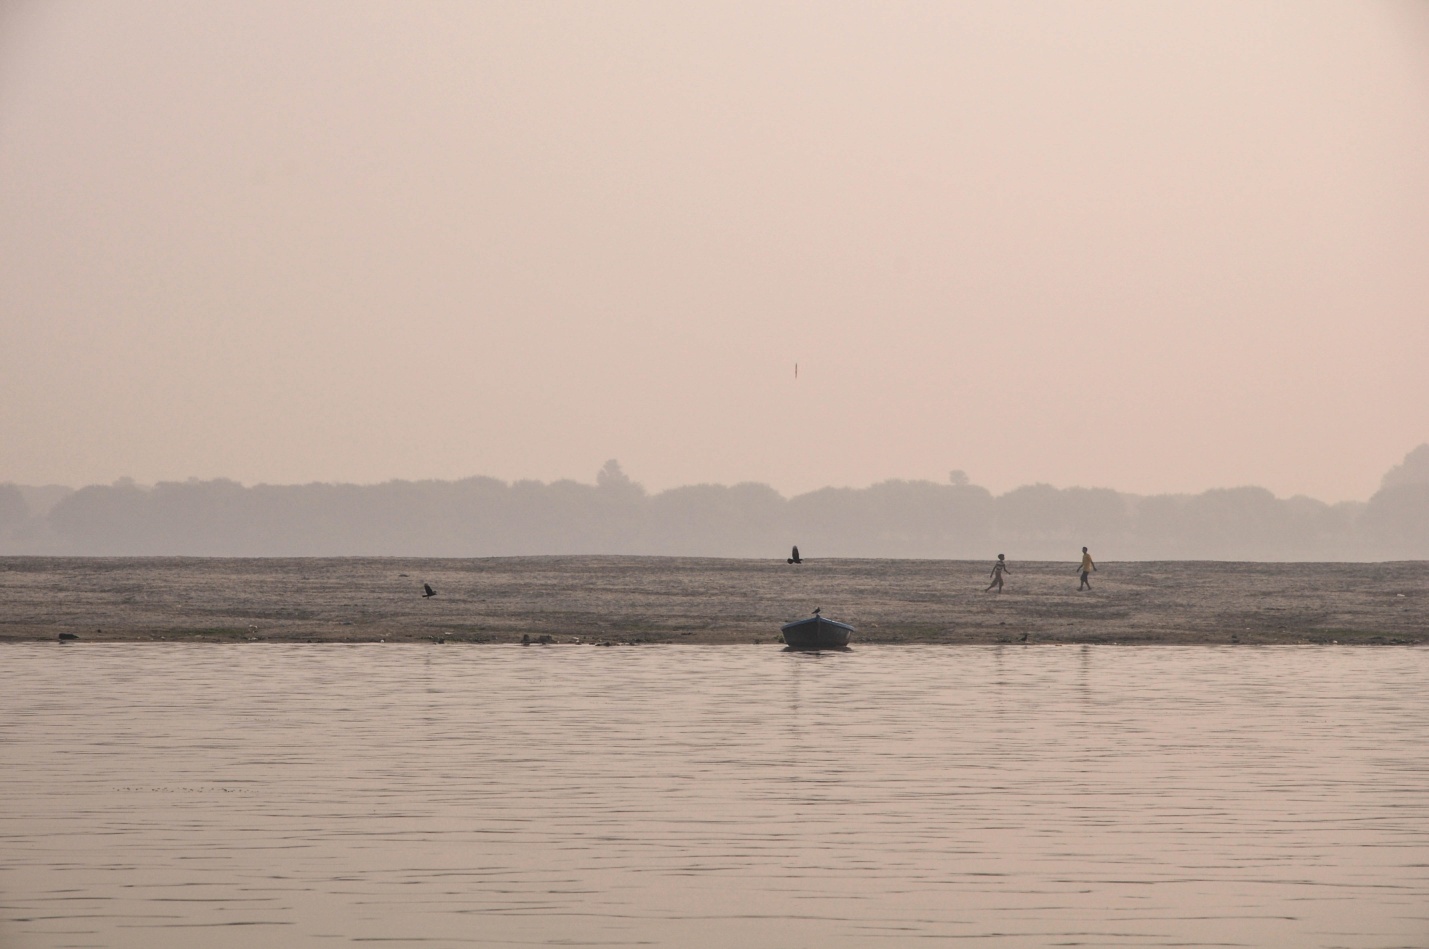 противоположный берег реки Ганг, Варанаси, Индия